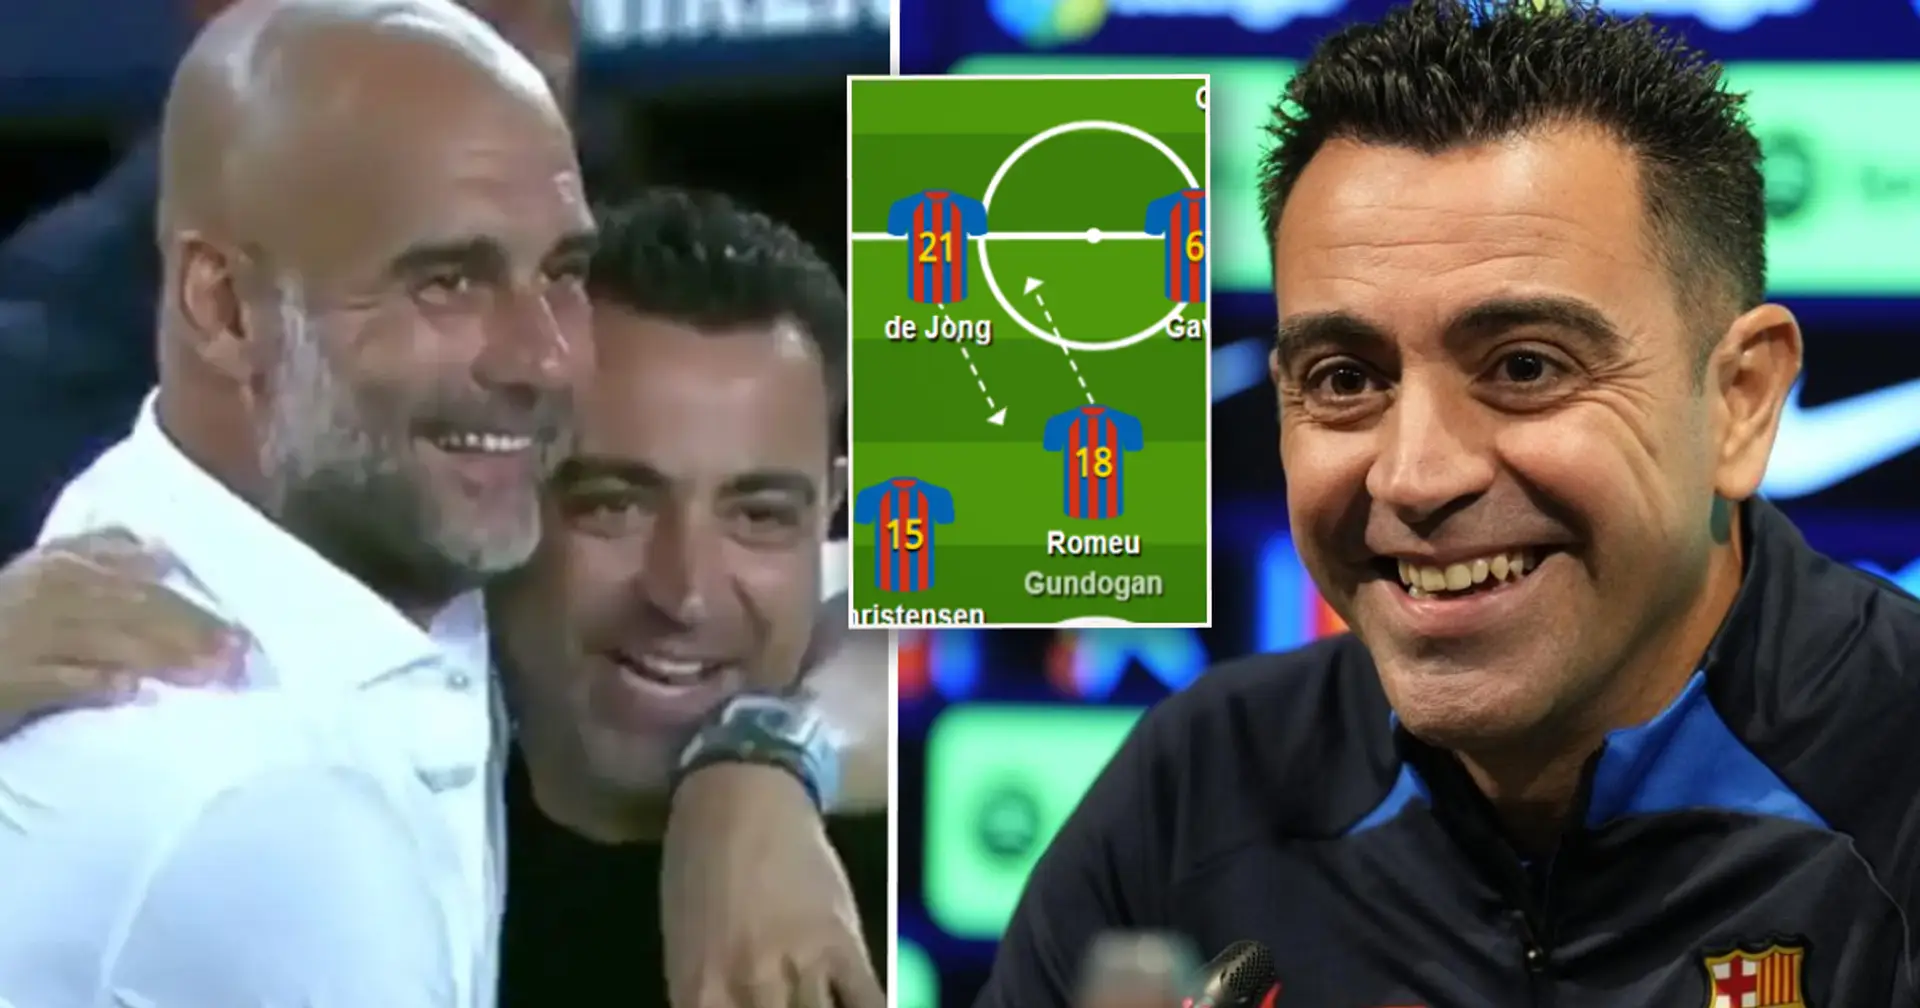 Le positionnement des joueurs du Barça vs Betis montre les nouvelles tactiques brillantes de Xavi pour faire pleuvoir des buts comme Pep